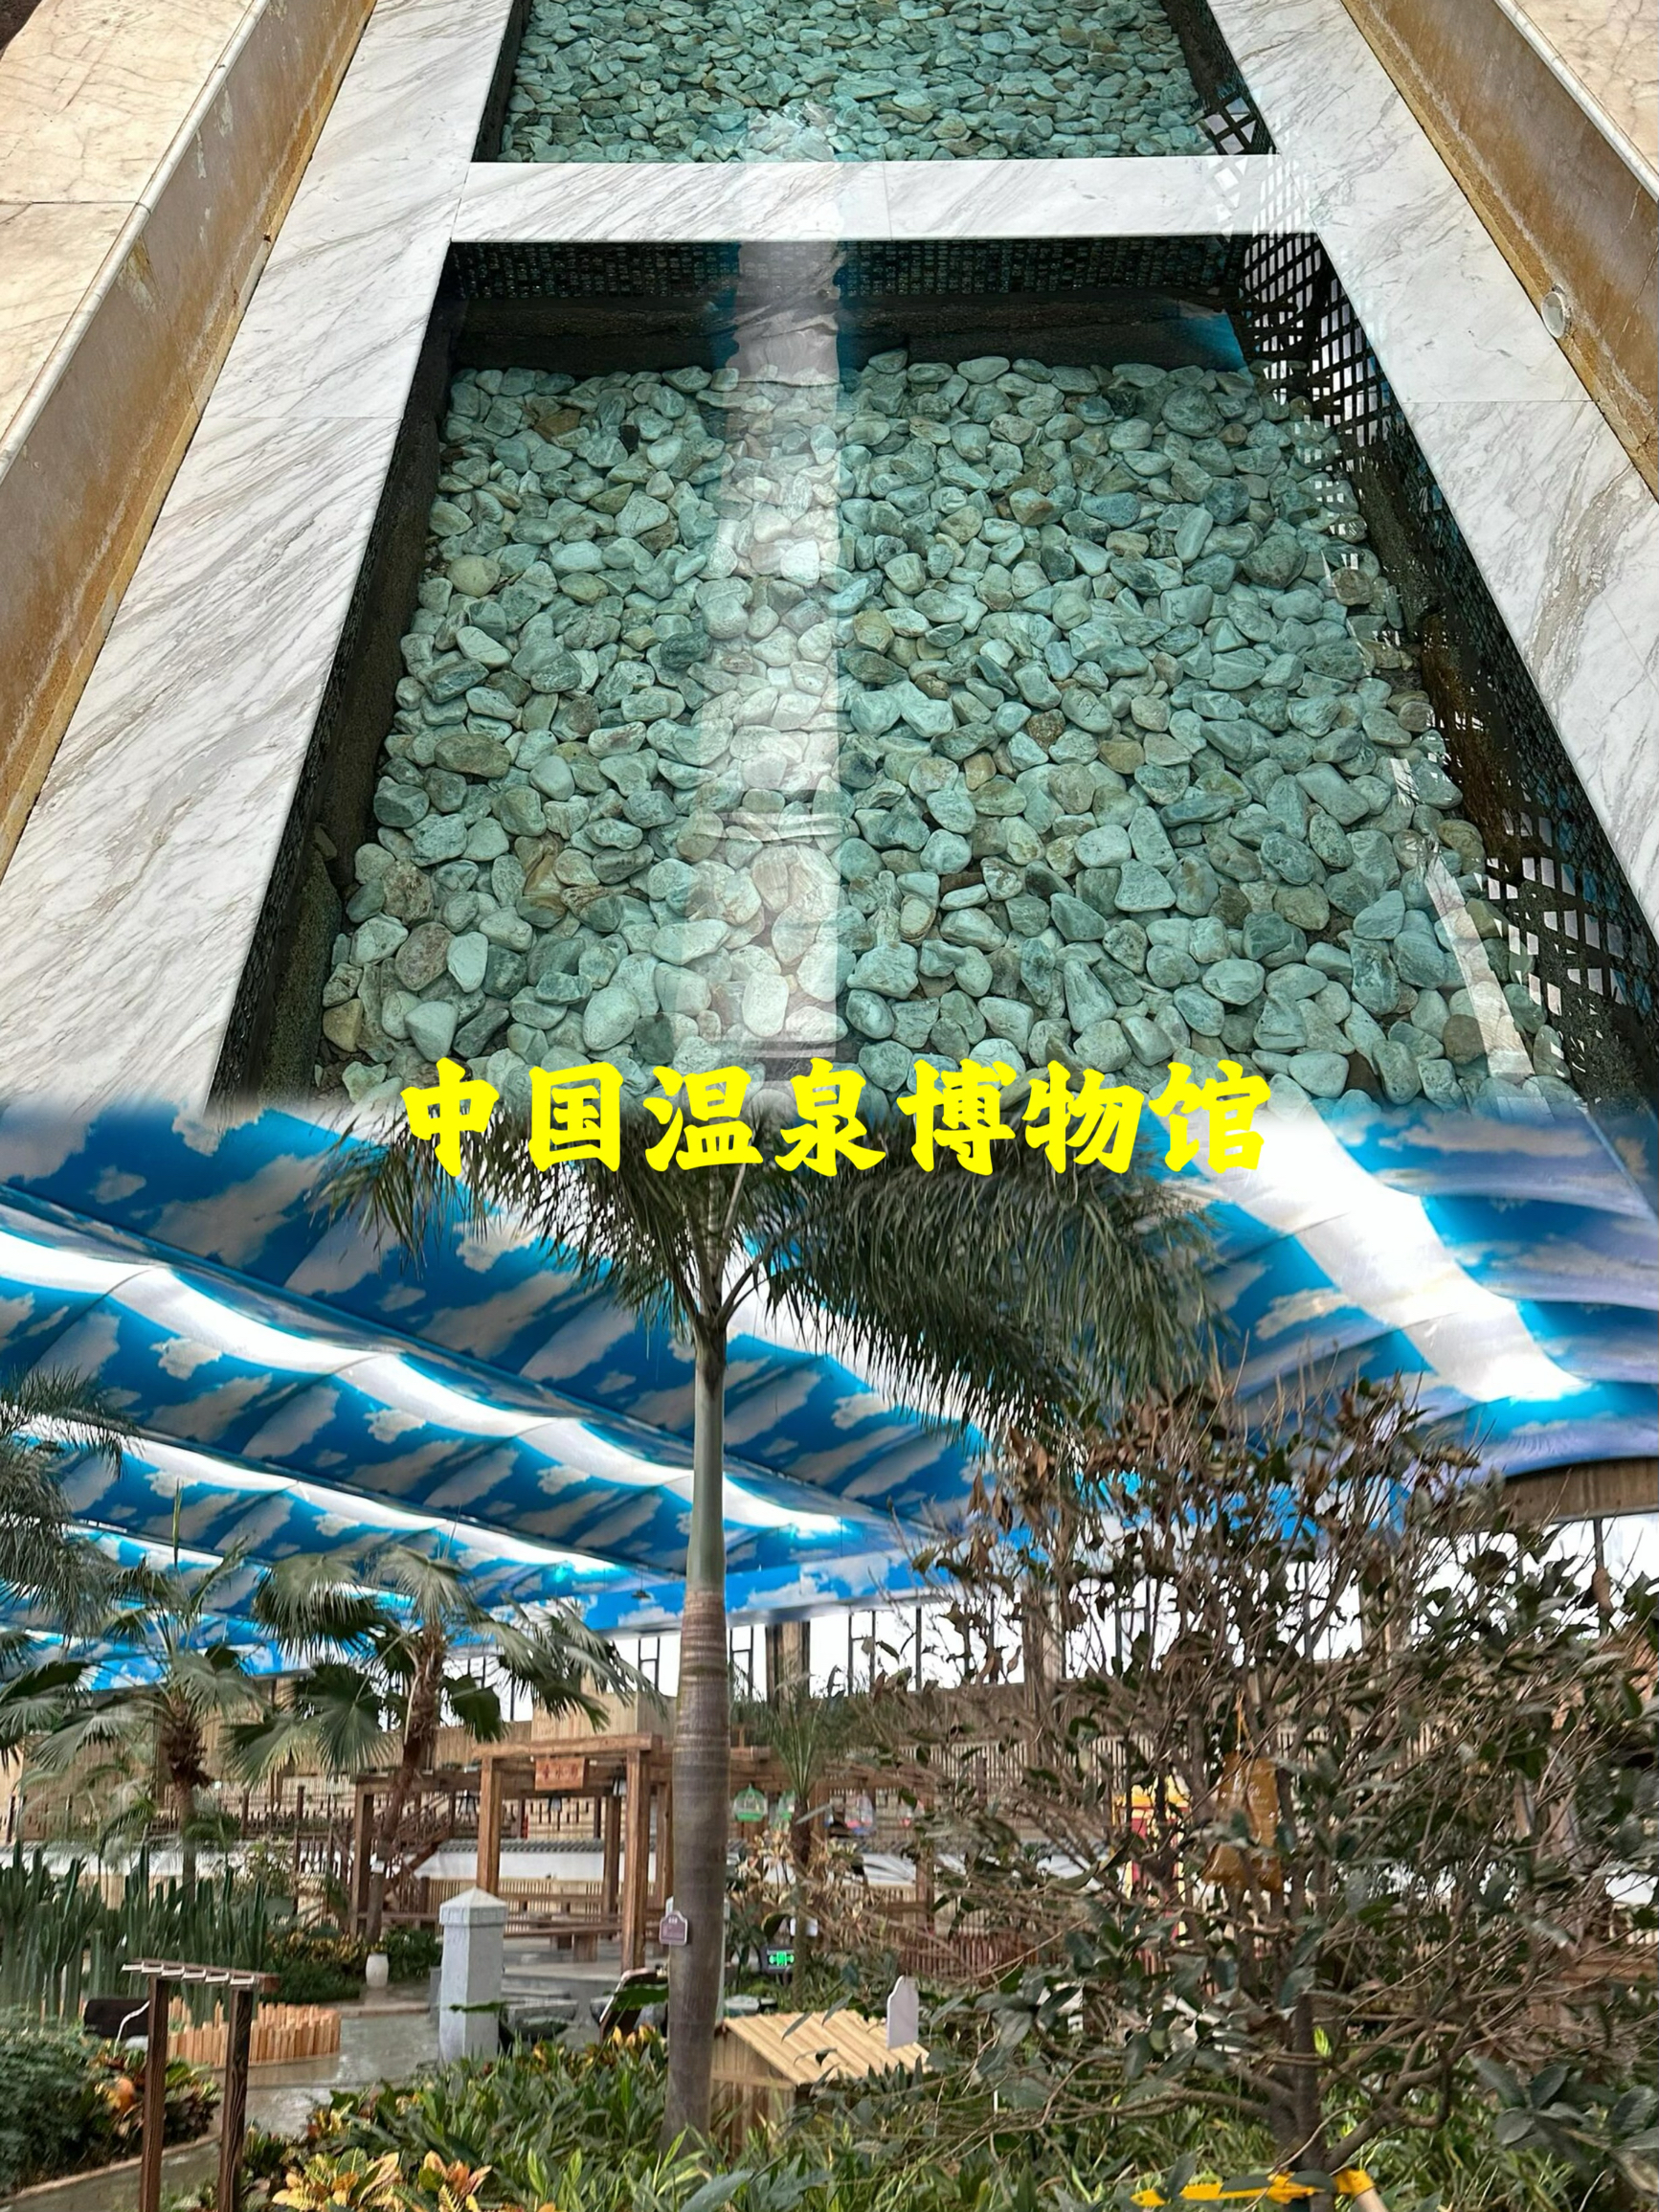 中国温泉博物馆游玩攻略